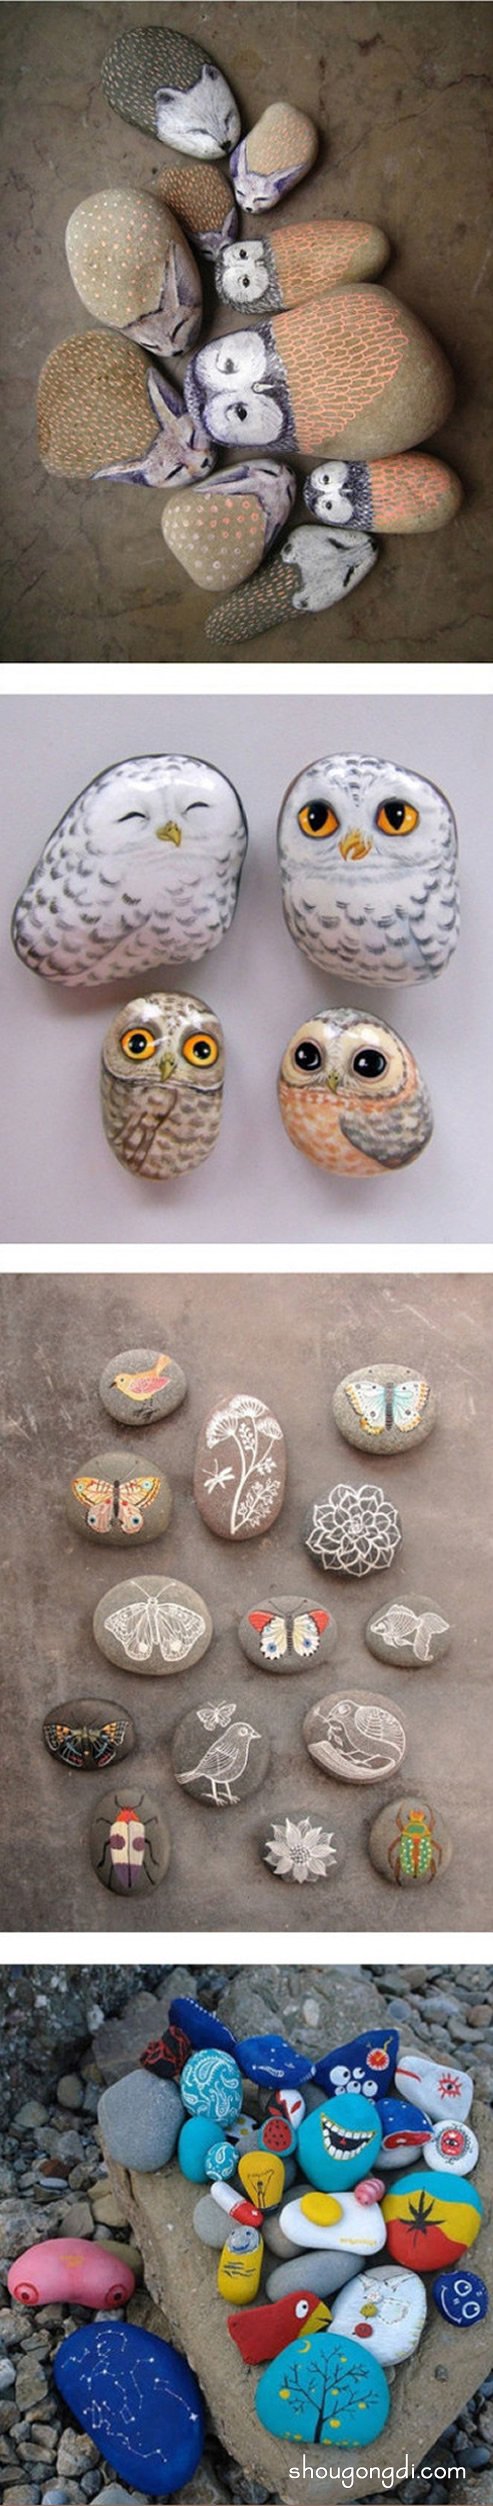 充滿童趣的石頭畫圖片 簡單又可愛的石繪作品 -  www.shougongdi.com